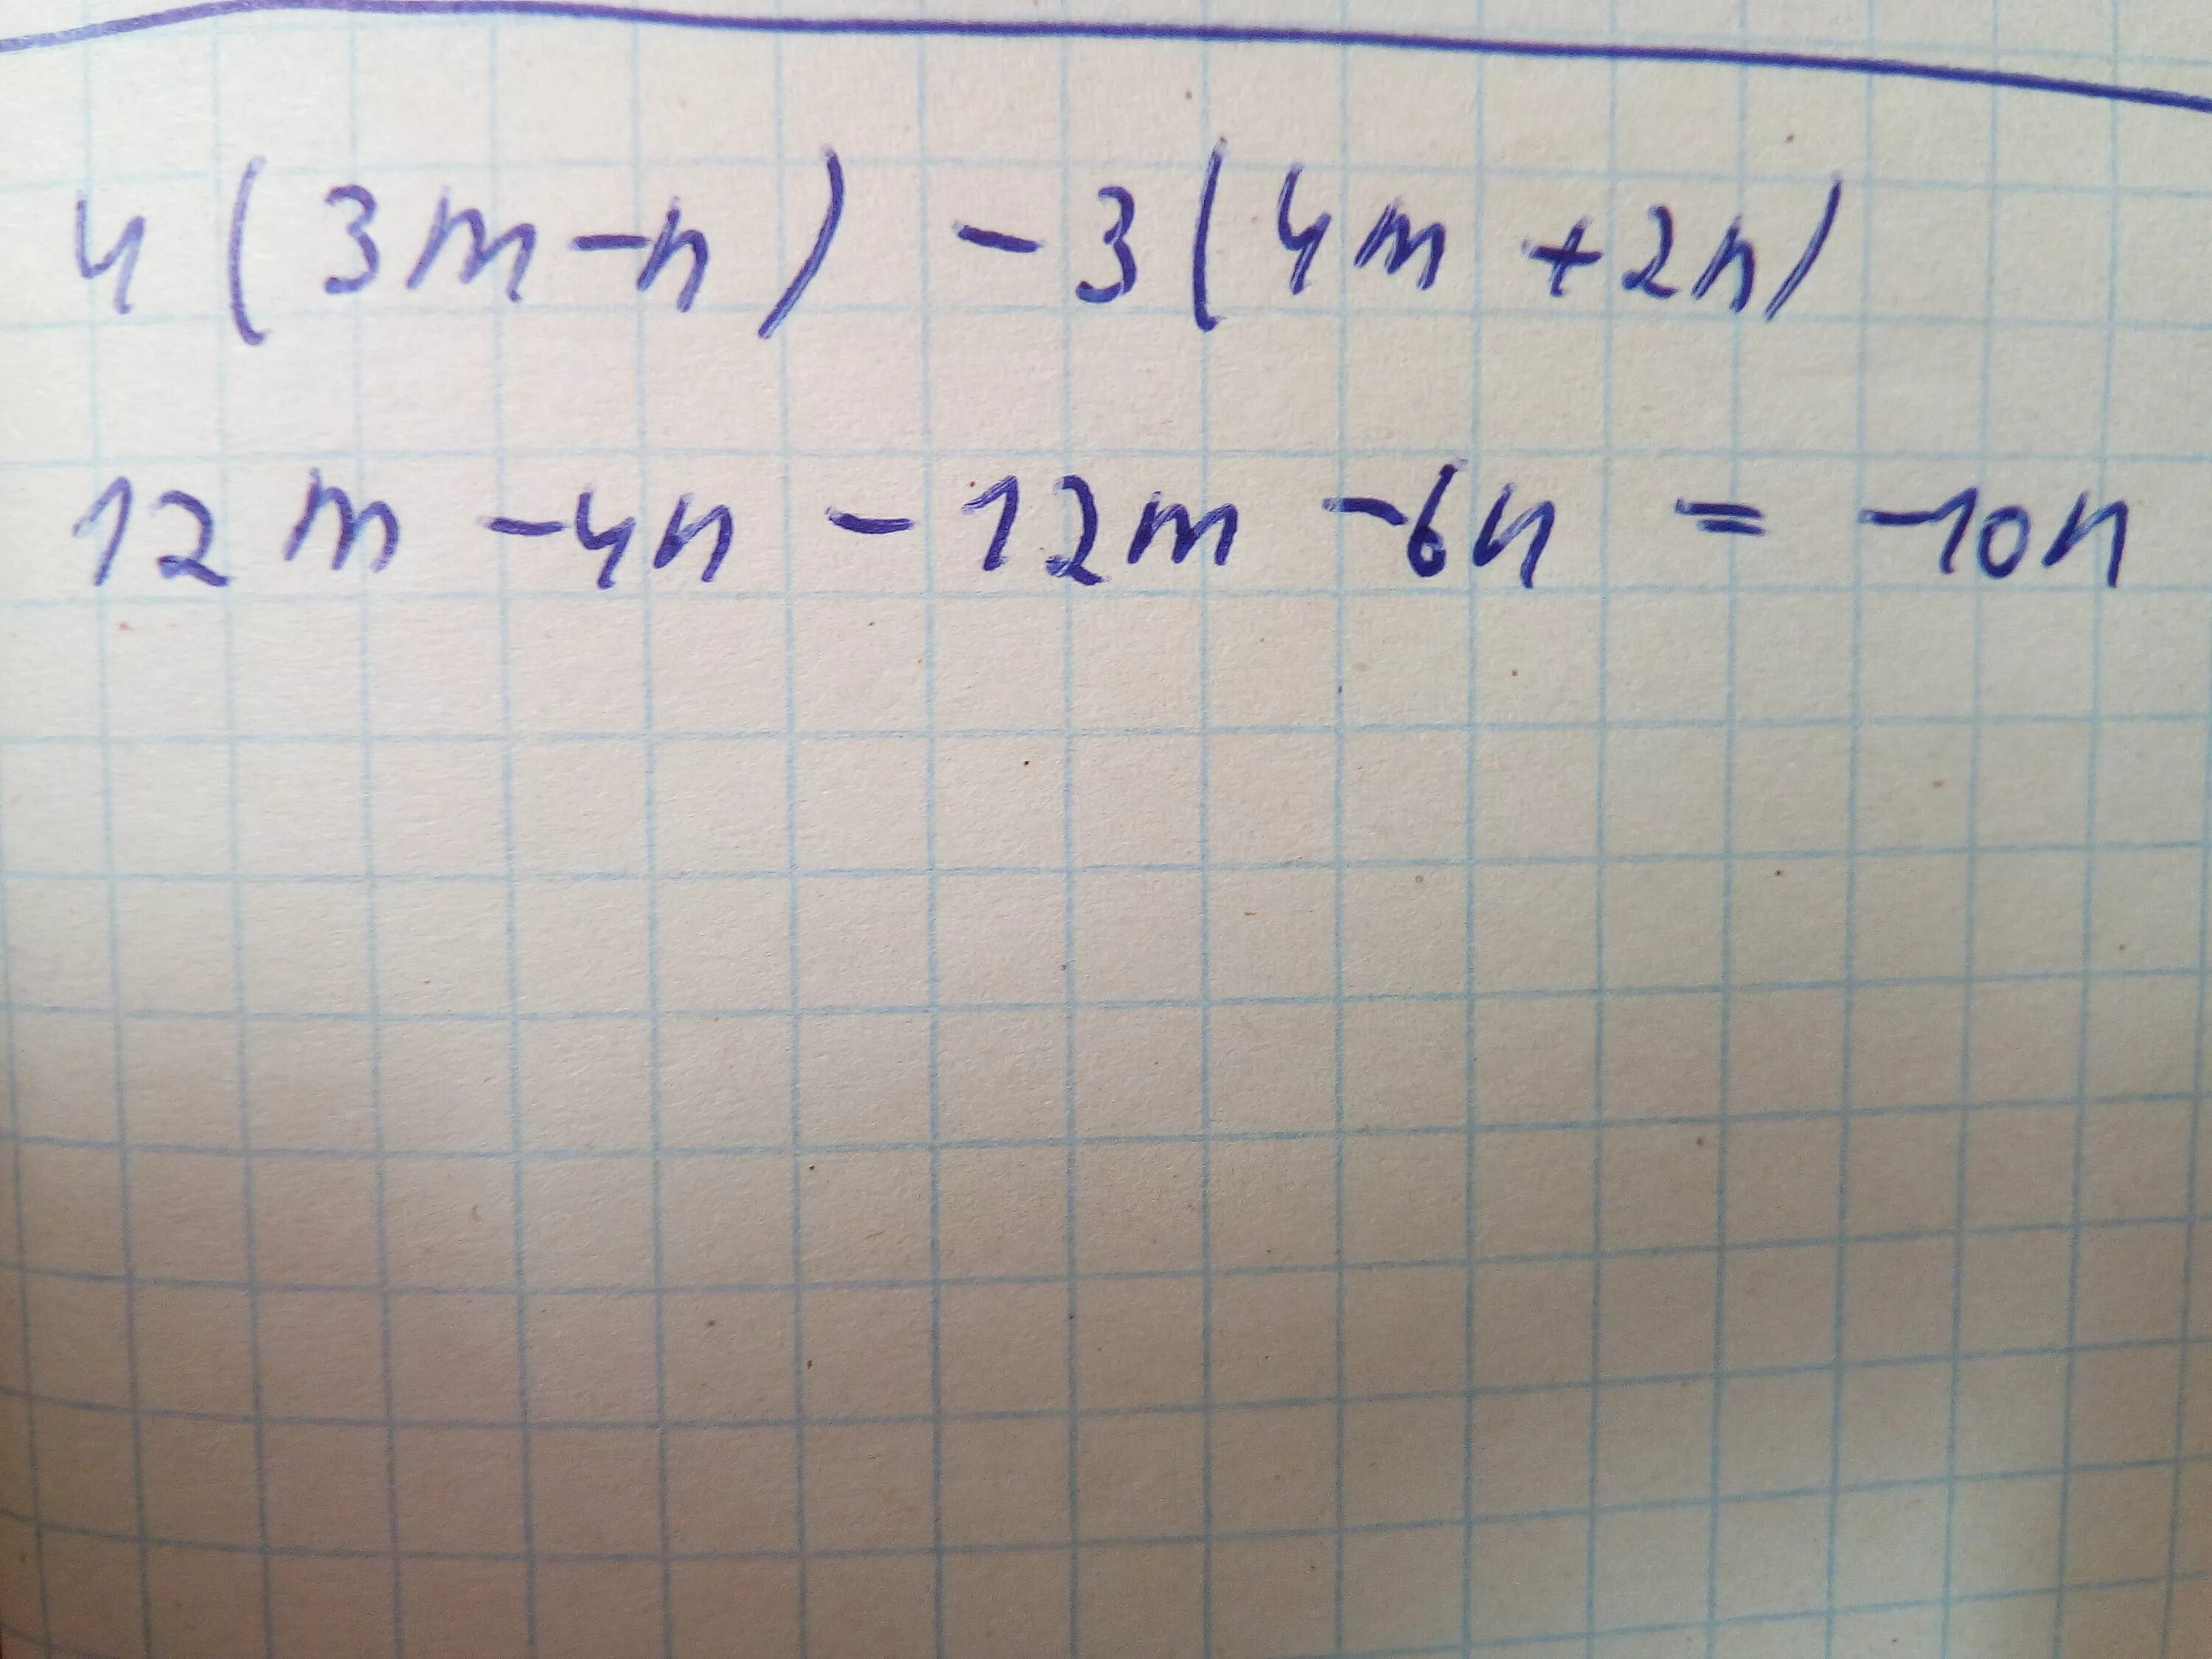 Упростить выражение 4 2 2. Упростить выражение m^2-4/m^2-2m. Упростить выражение m+2/4m. Упростите выражение 2m 2m+n-4m2. Упростите выражение 4m-2/m-2+2m+2/2-m.